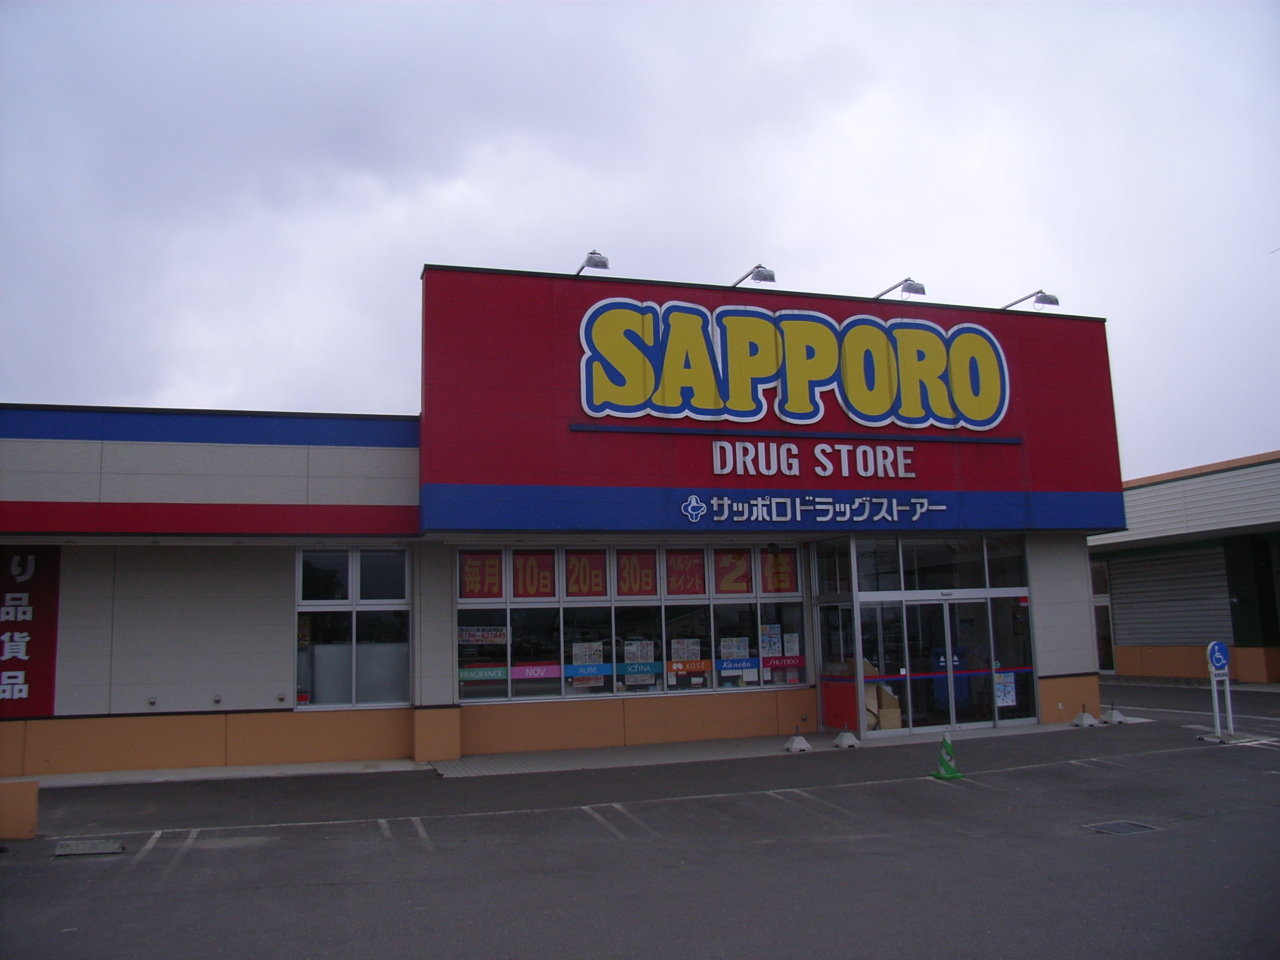 Dorakkusutoa. Sapporo drugstores Nanae shop 192m until (drugstore)